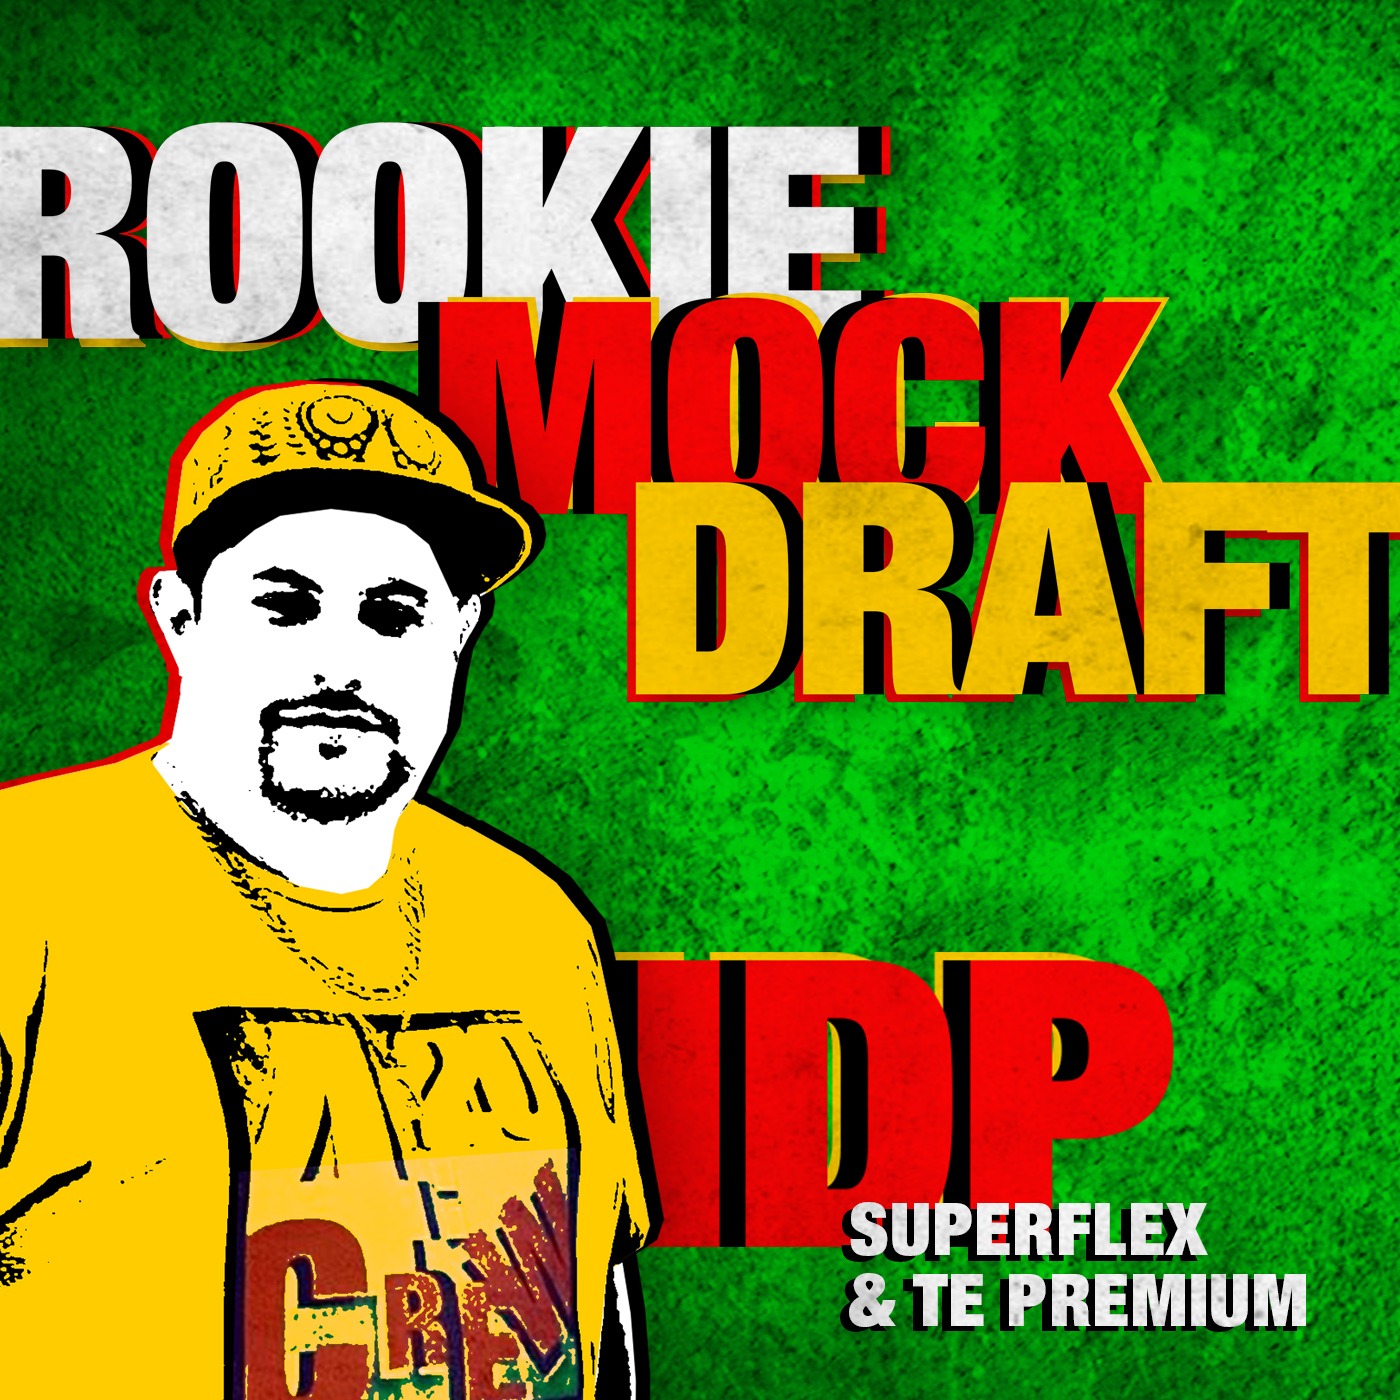 Rookie Mock Draft IDP,  SuperFlex & TE Premium Image